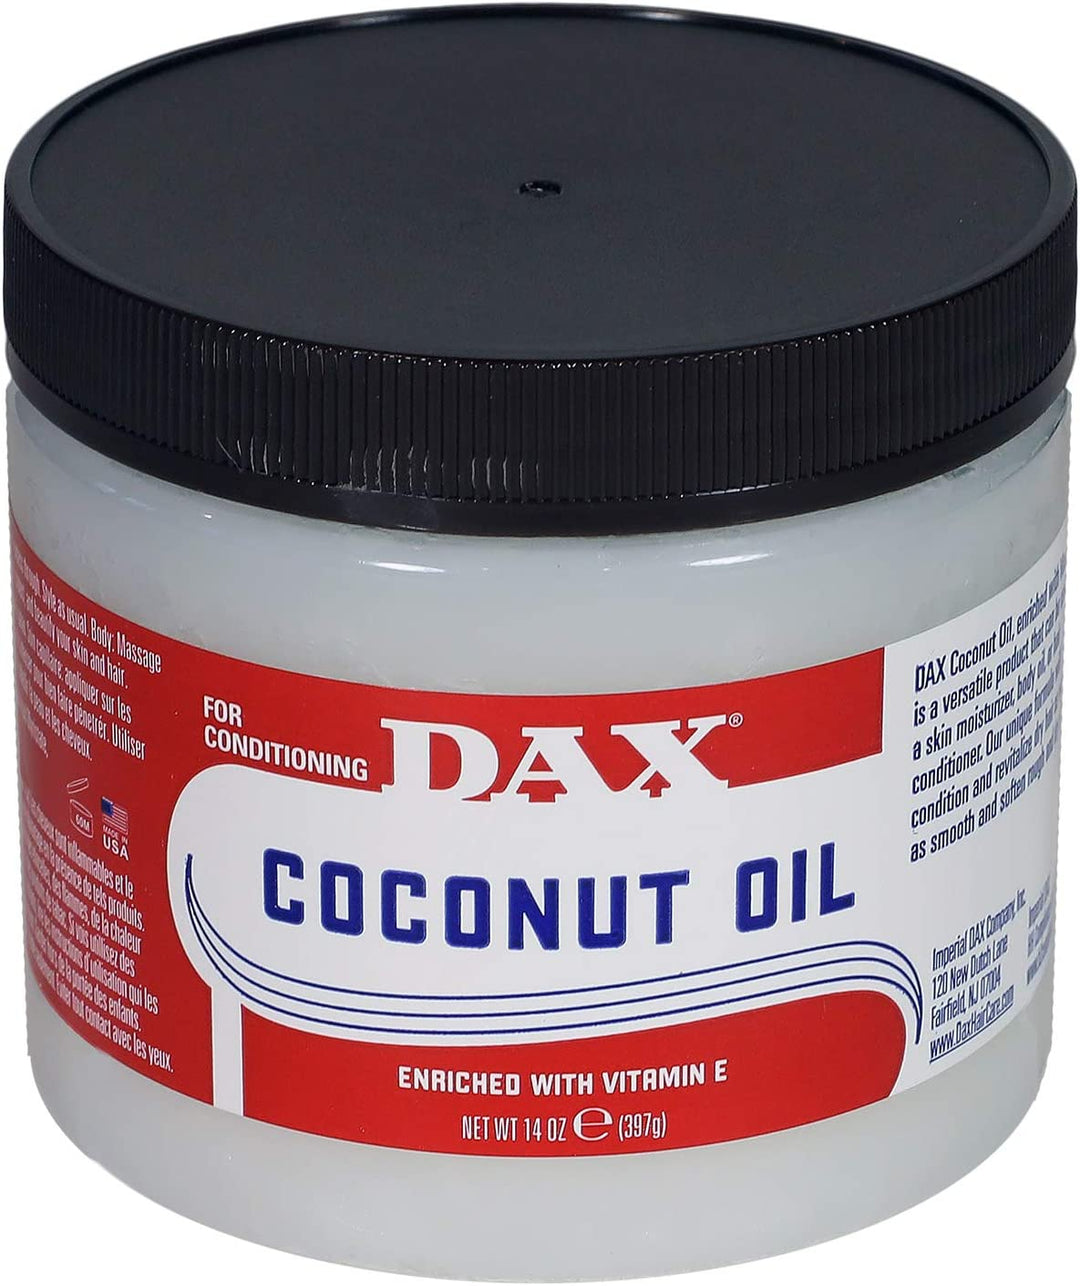 Dax Coconut Oil enriched with Vitamin E 14 oz